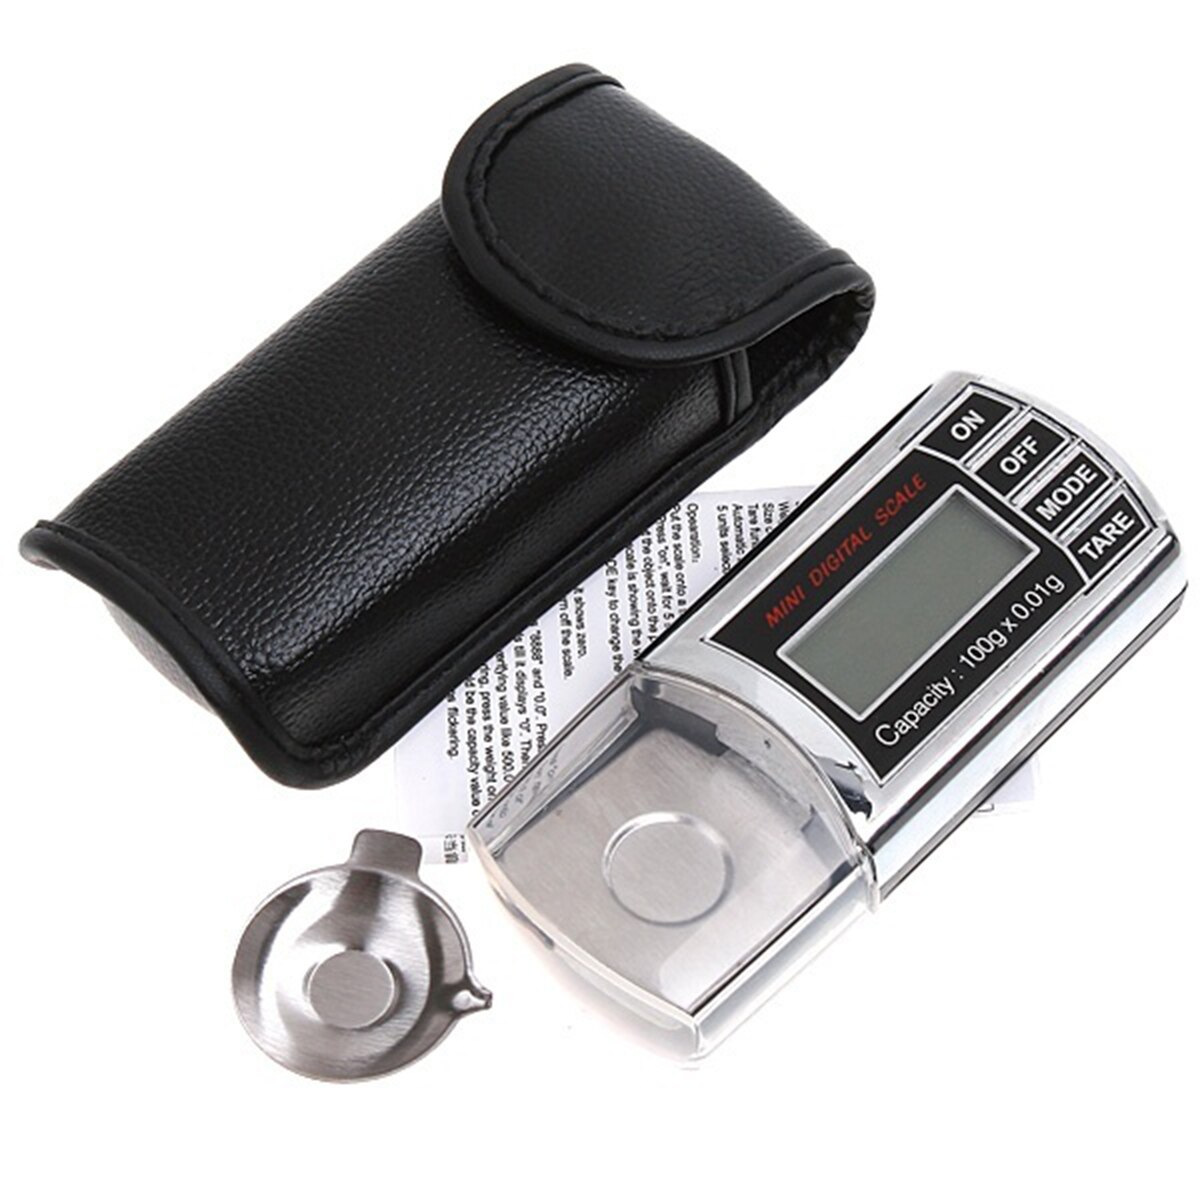 Mini digital vægt bærbar lcd digital lommevægt præcis balance med bakke i rustfrit stål og lædertaske til smykker